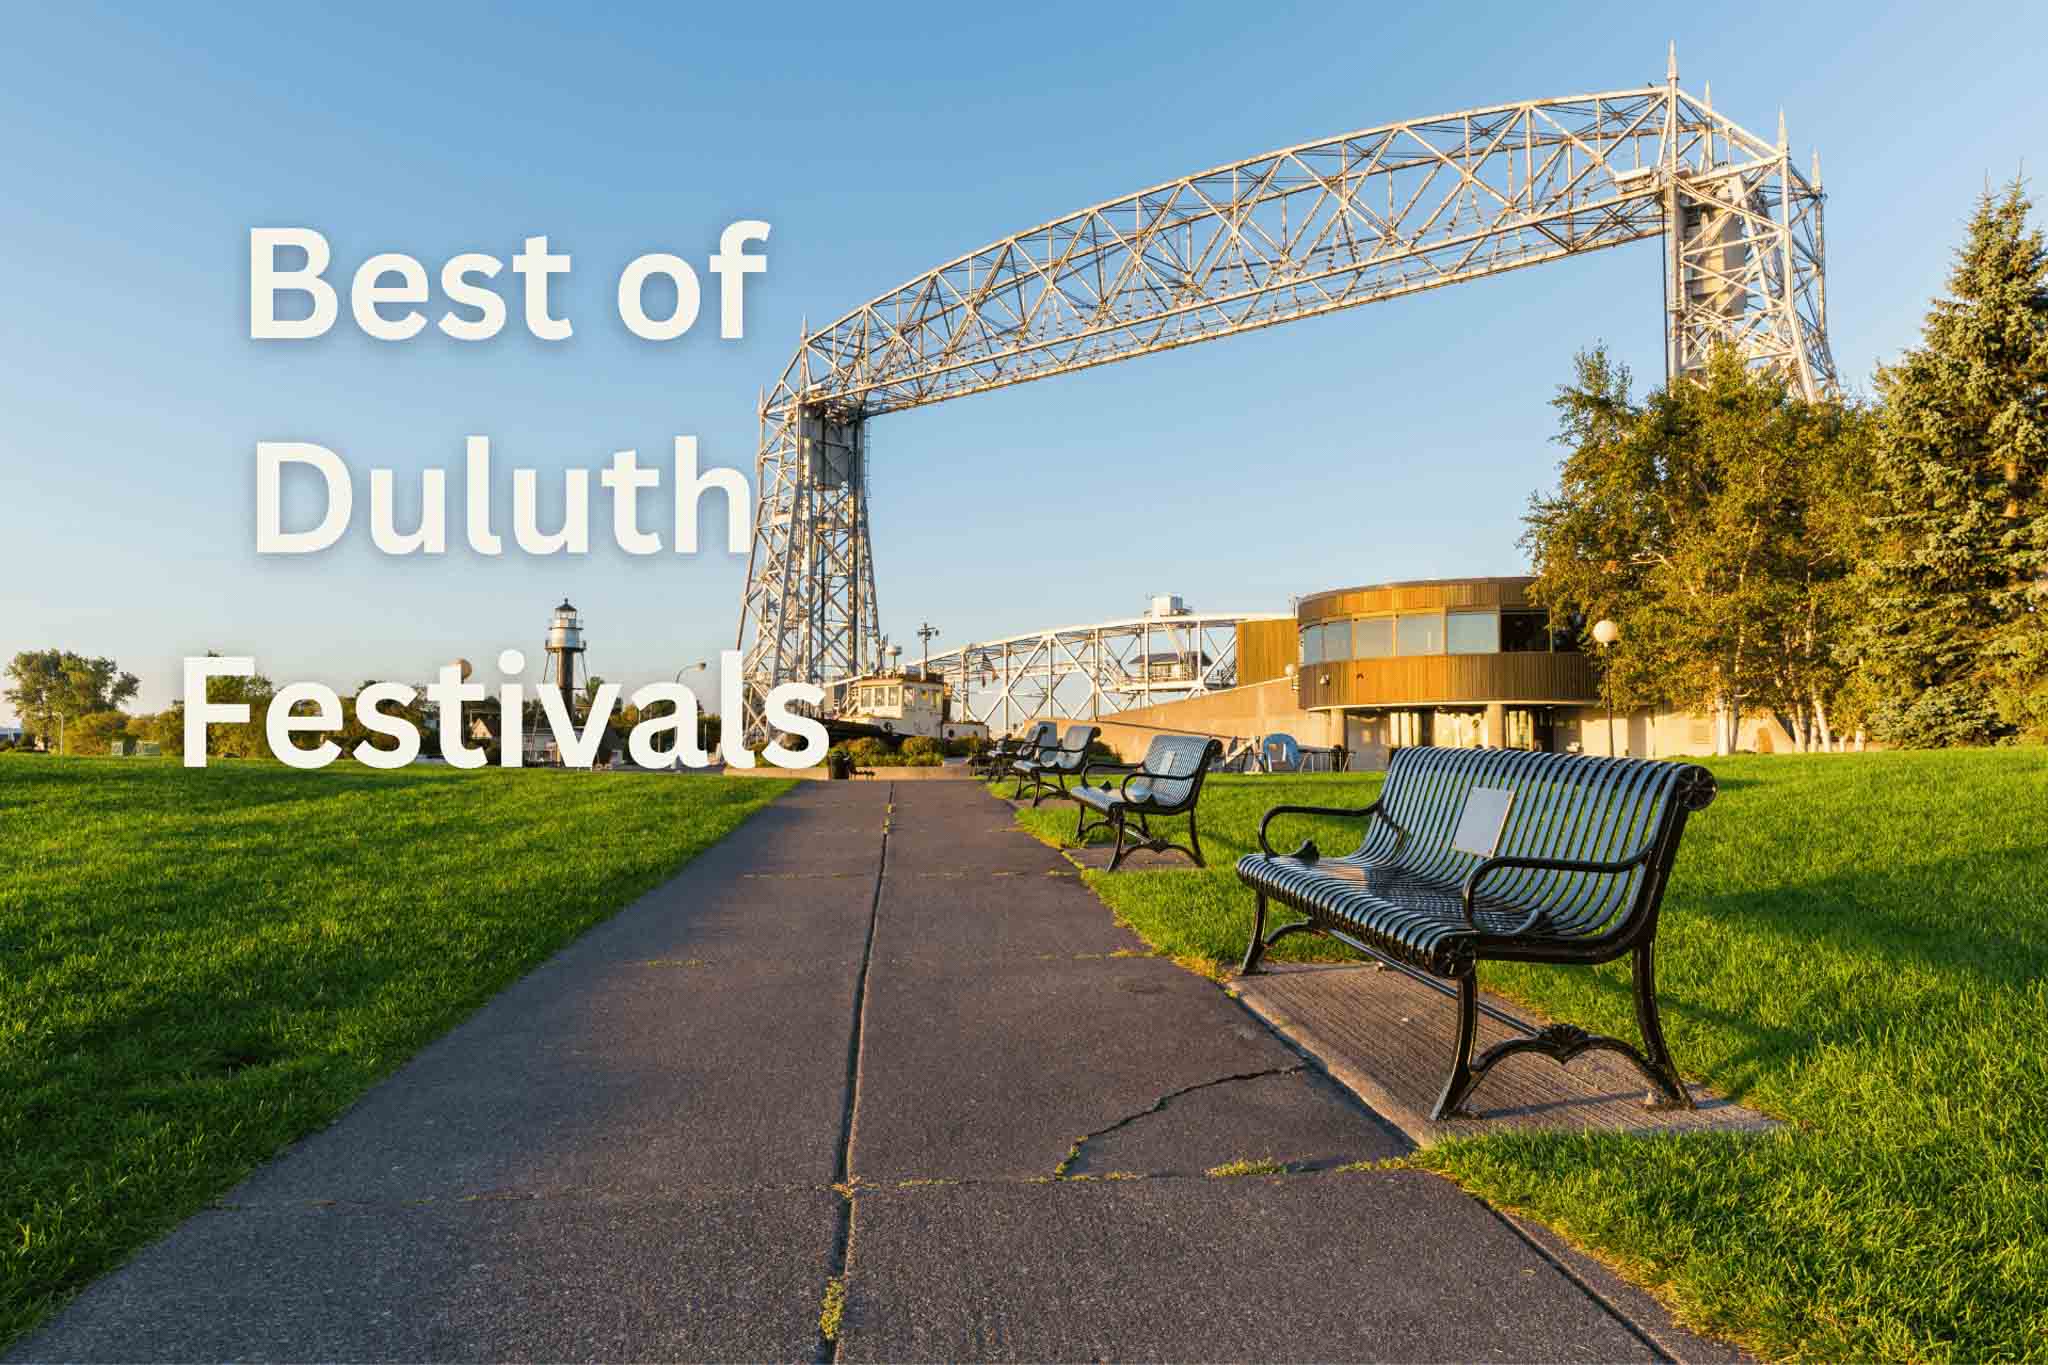 Best Duluth Festivals